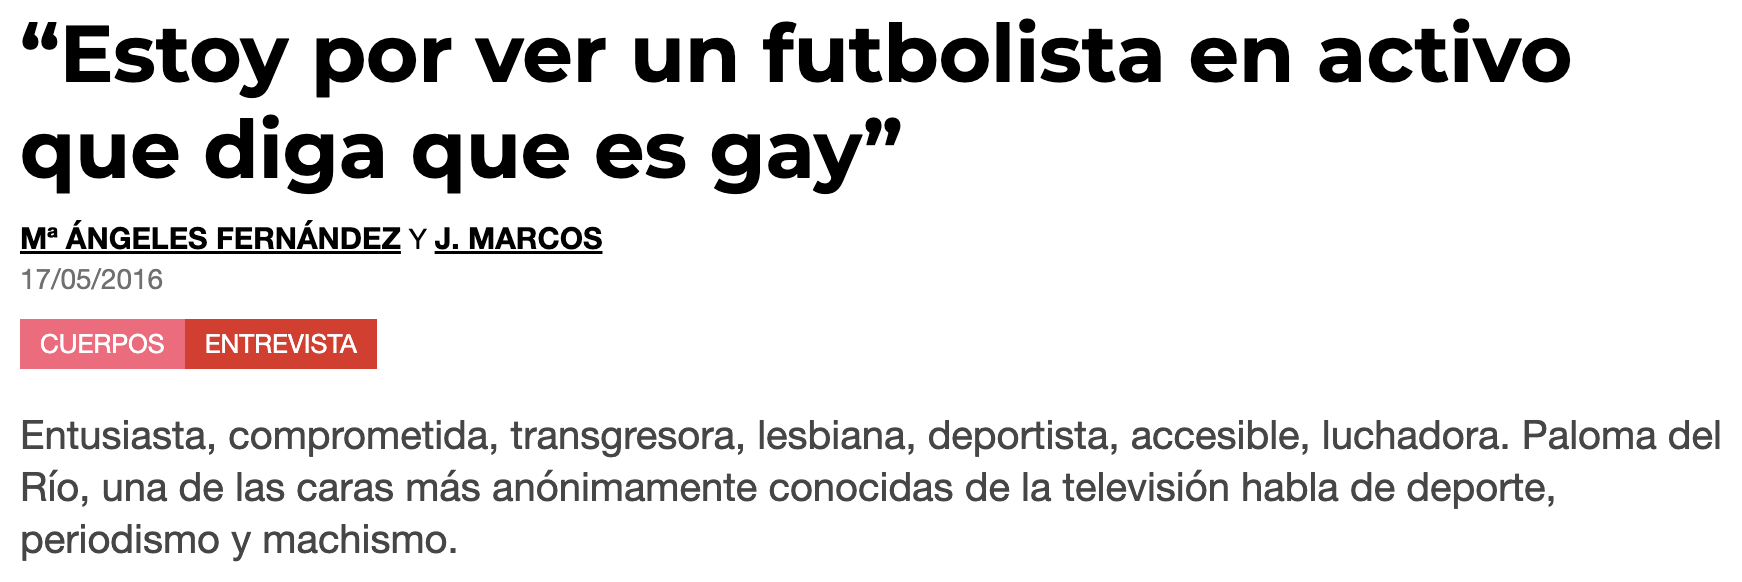 Pikara Magazine: “Estoy por ver un futbolista en activo que diga que es gay”